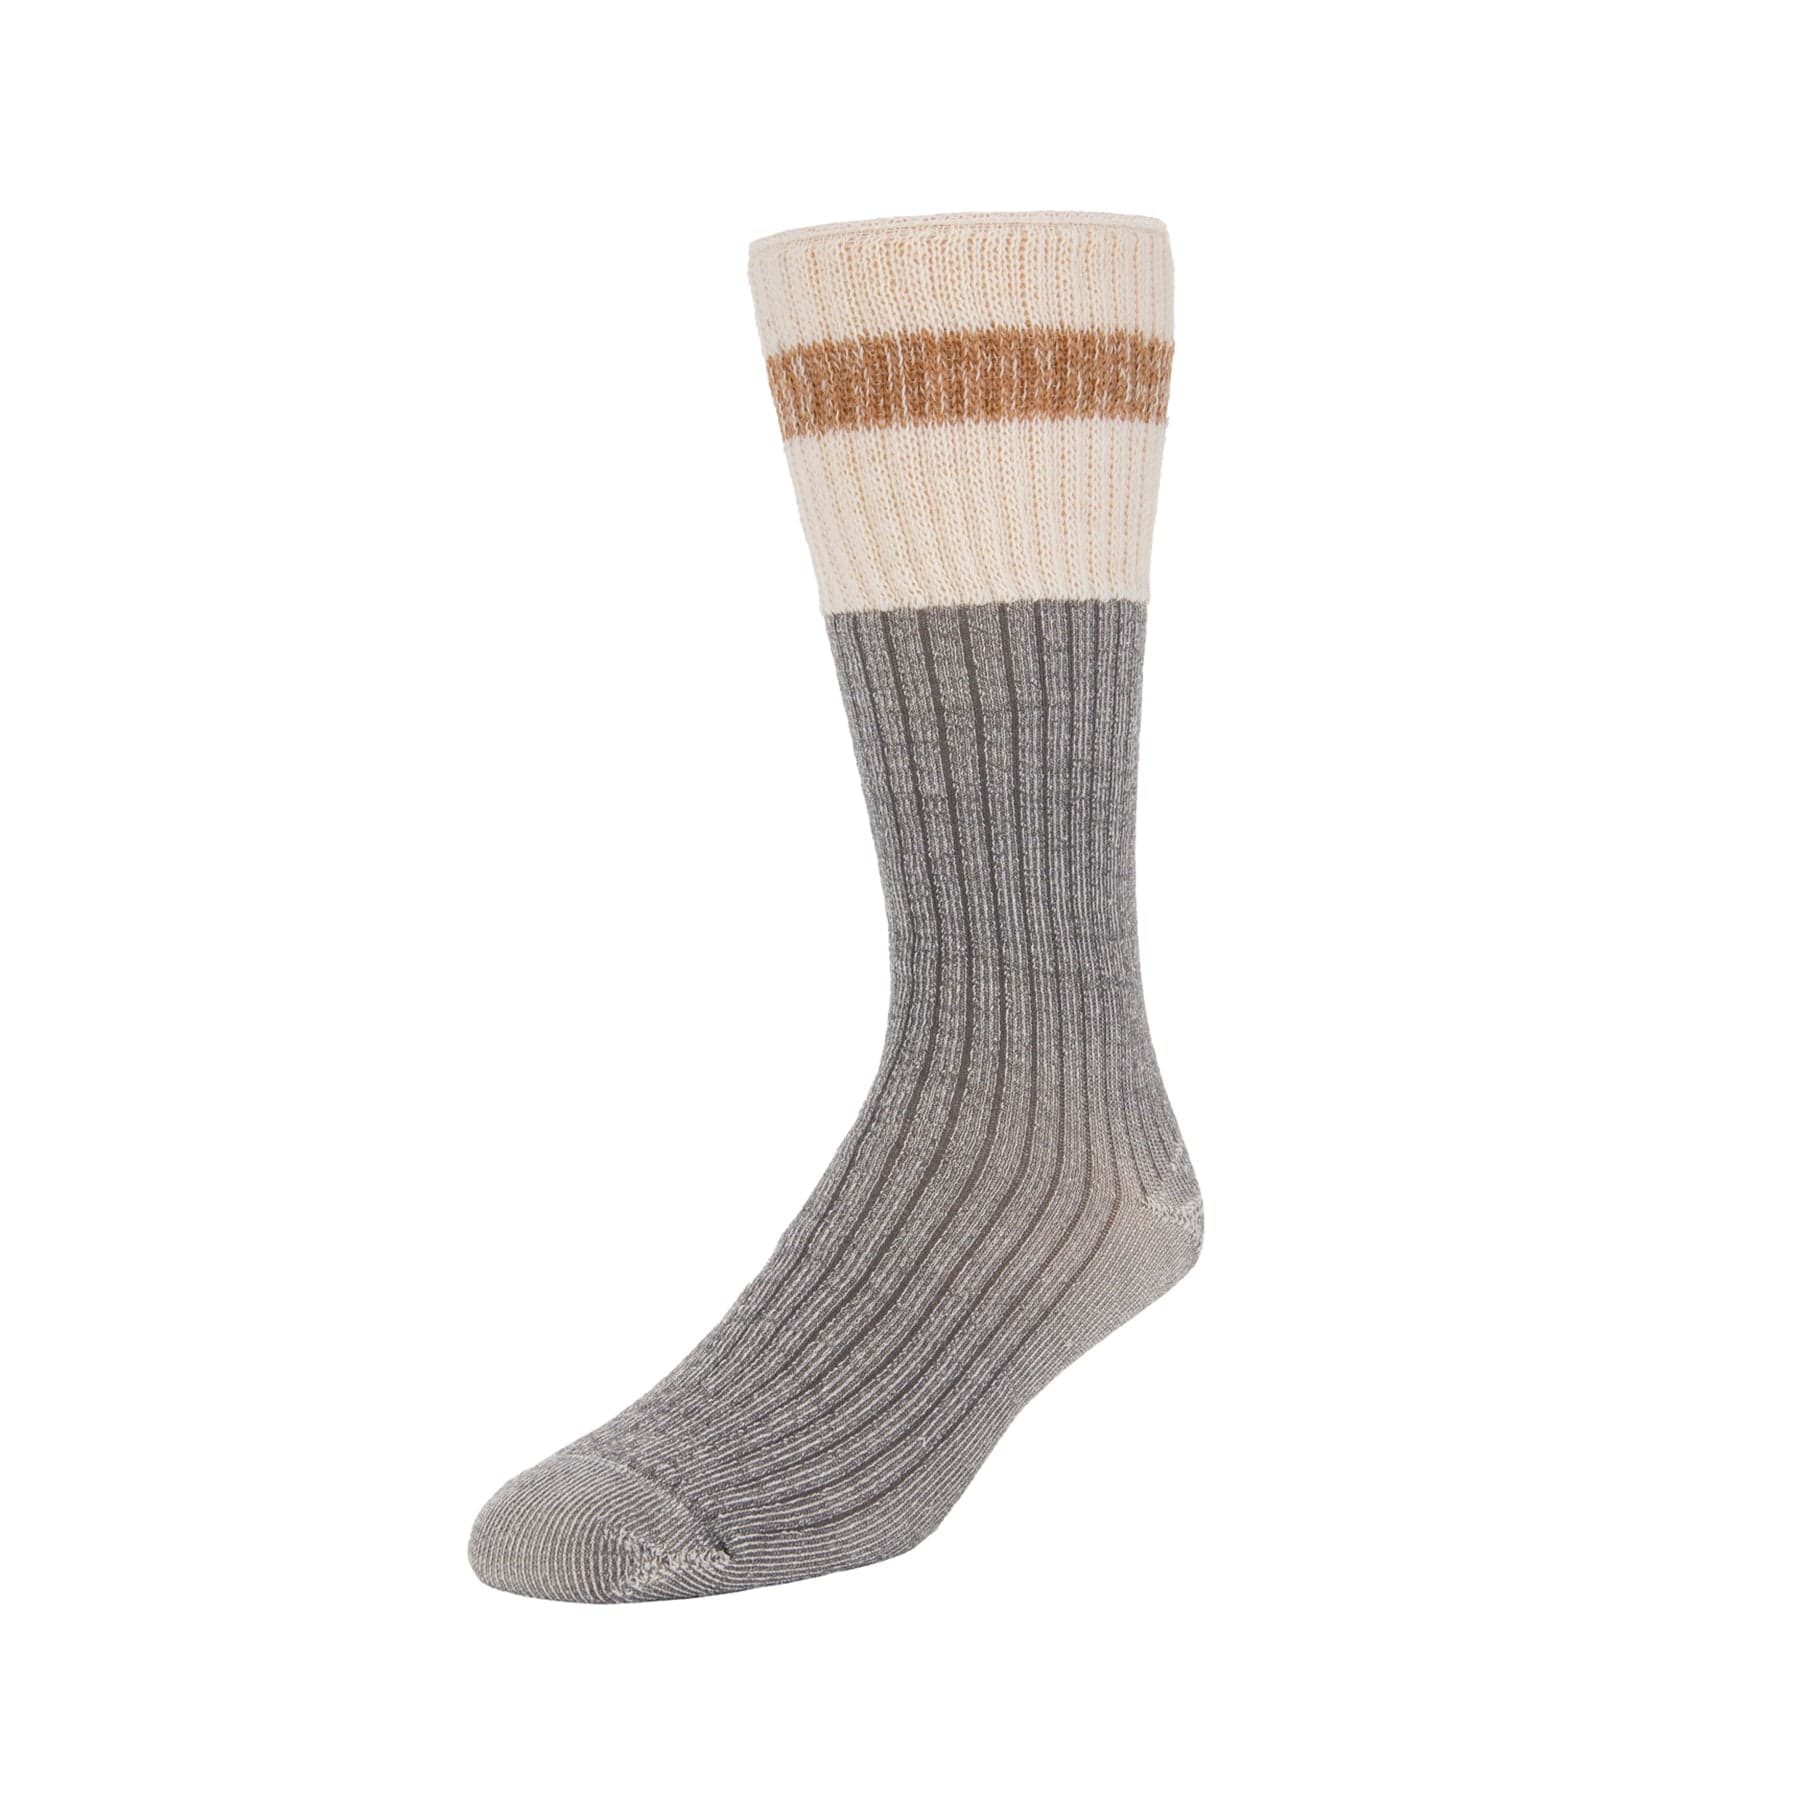 Merino Wool Cushioned Camp Sock - Granite – zkano socks